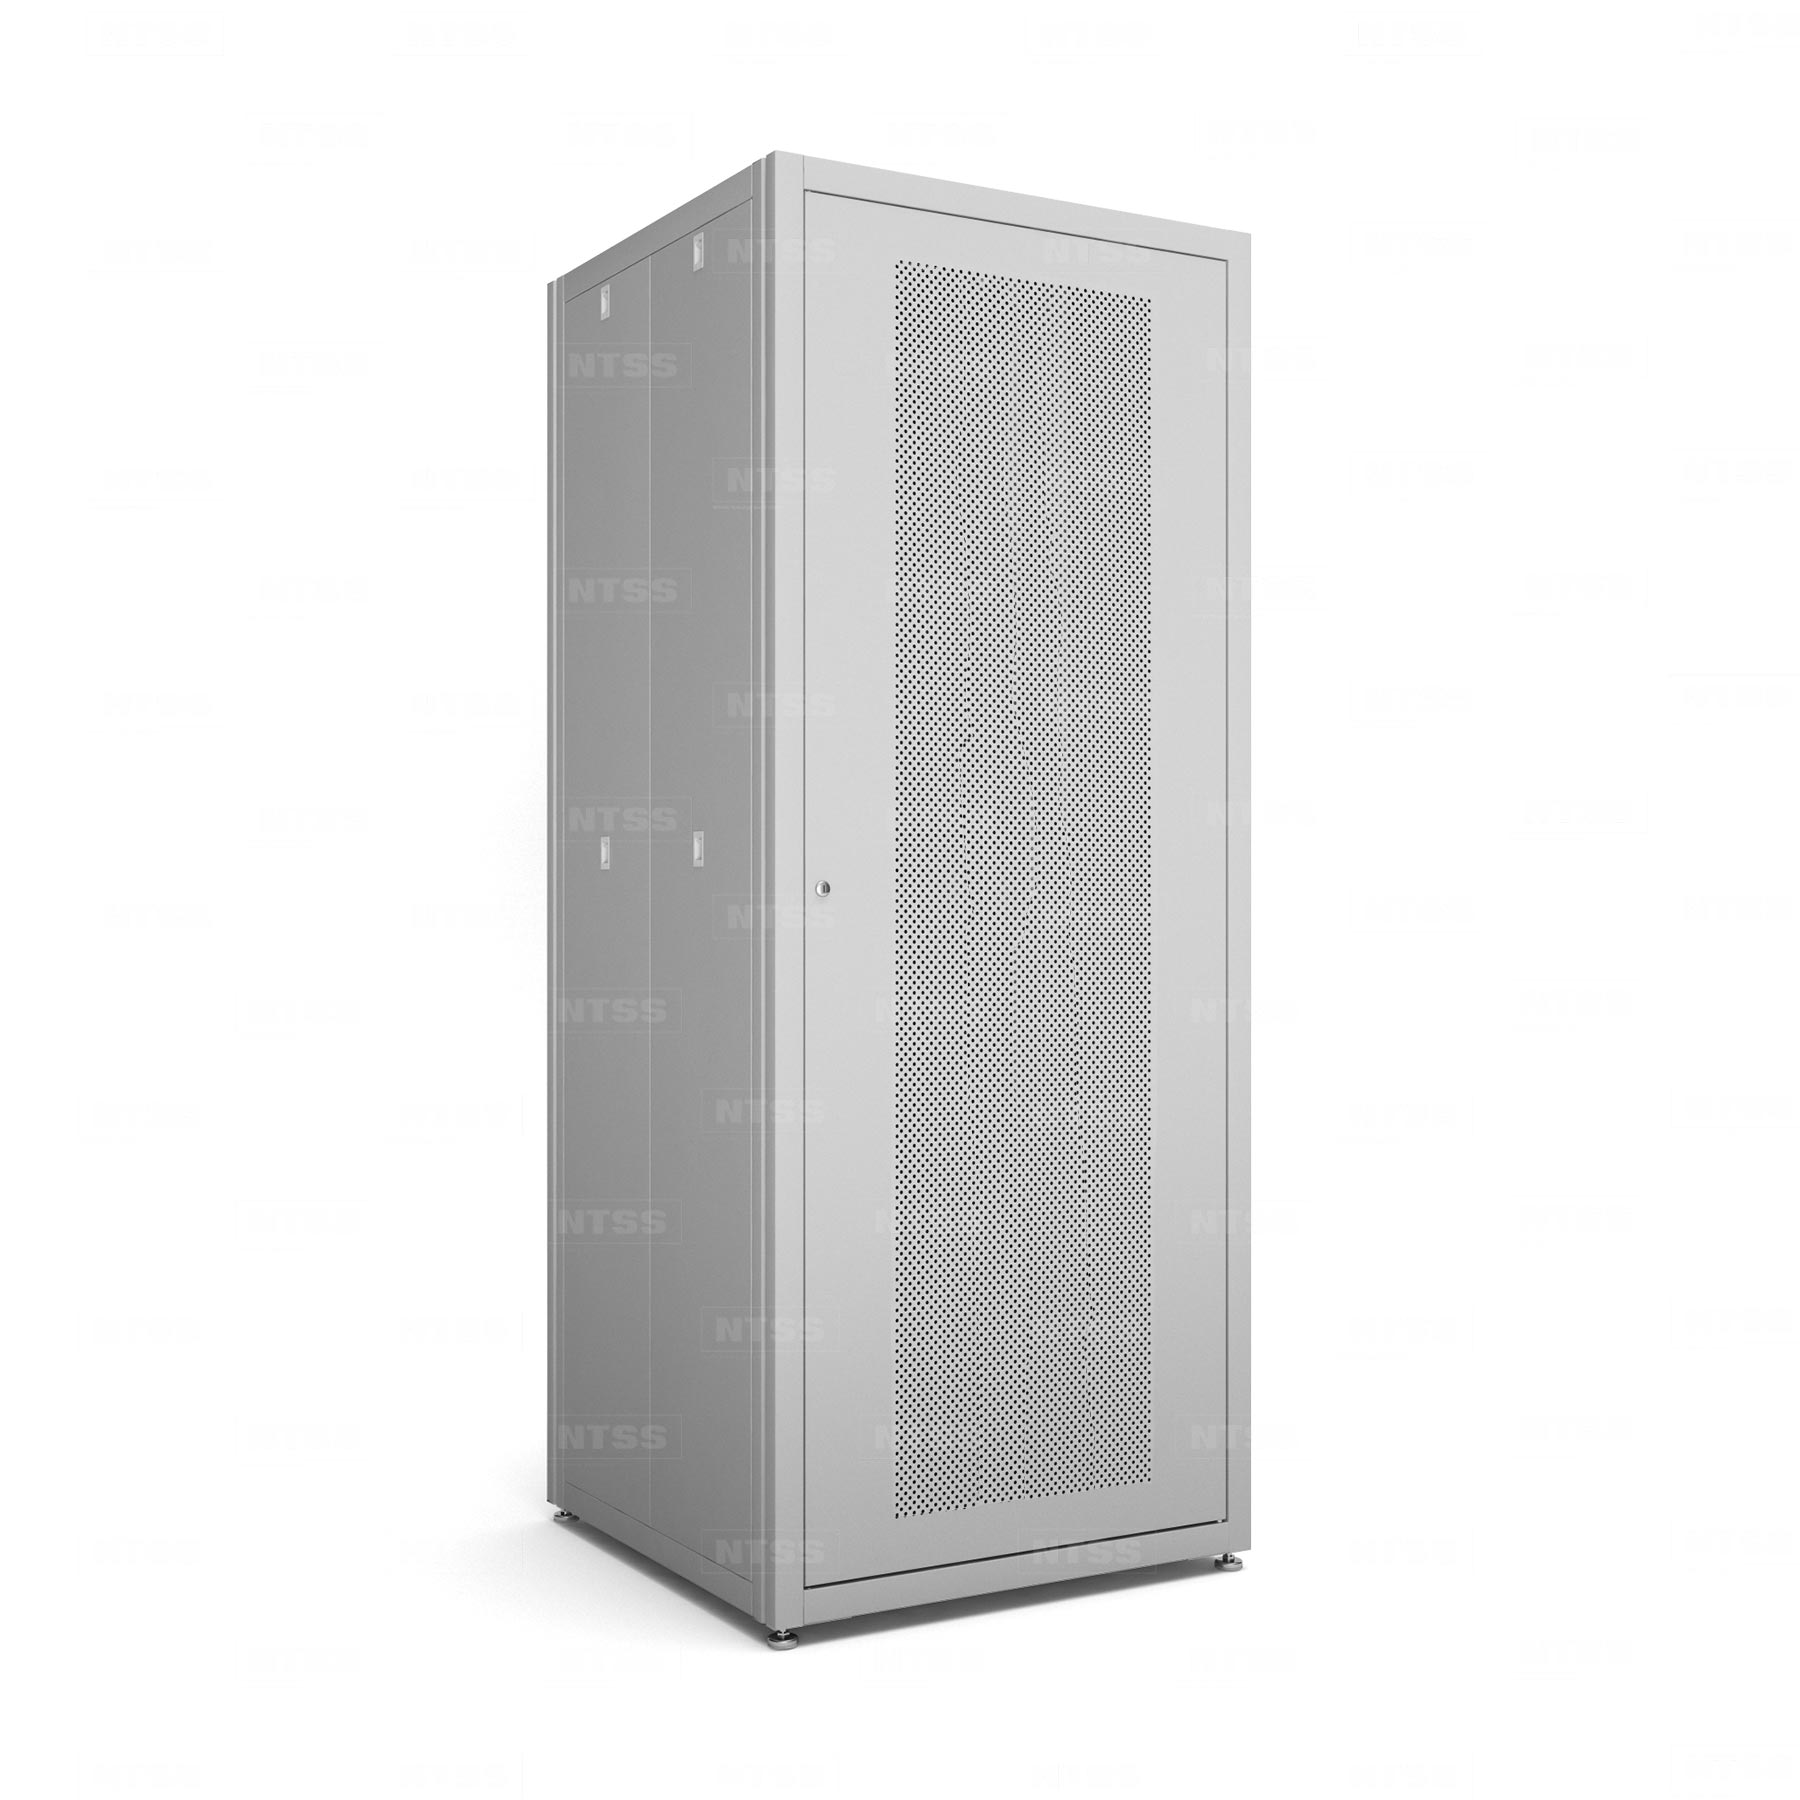 19" напольный шкаф "СТАНДАРТ" 42U 800х800 мм, передняя и задняя дверь перфорация, регулируемые опоры, боковые стенки съемные